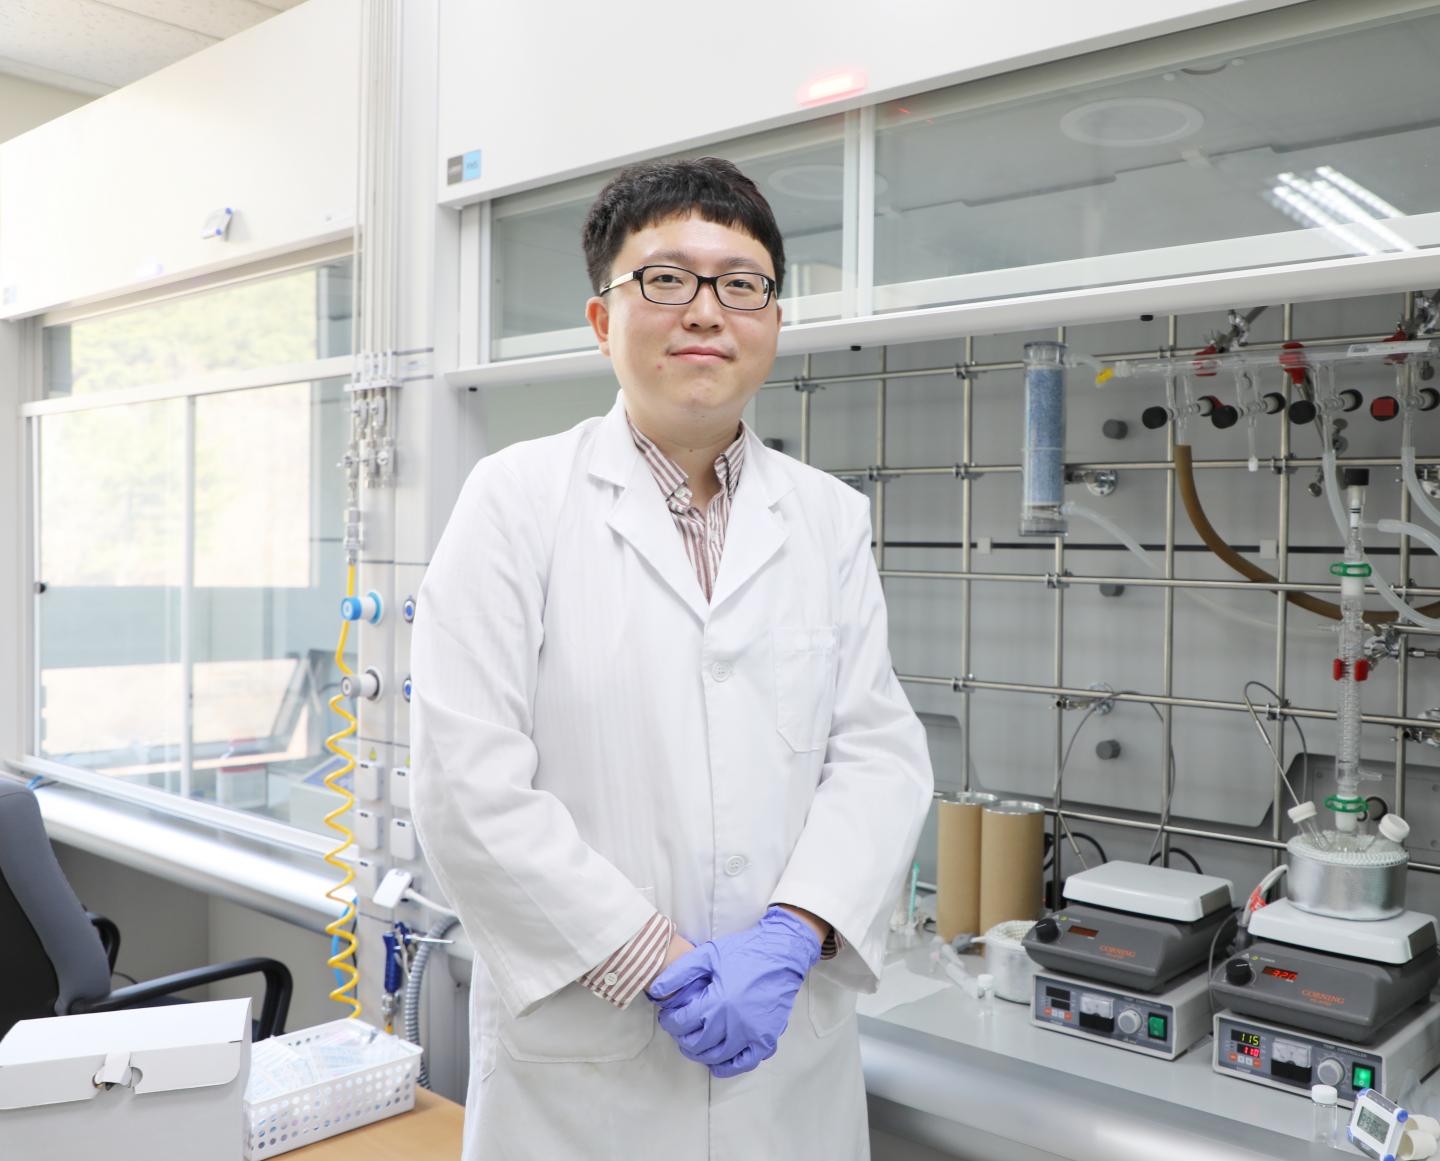  Professor Jongmin Choi, Department of Energy Science & Engineering, DGIST